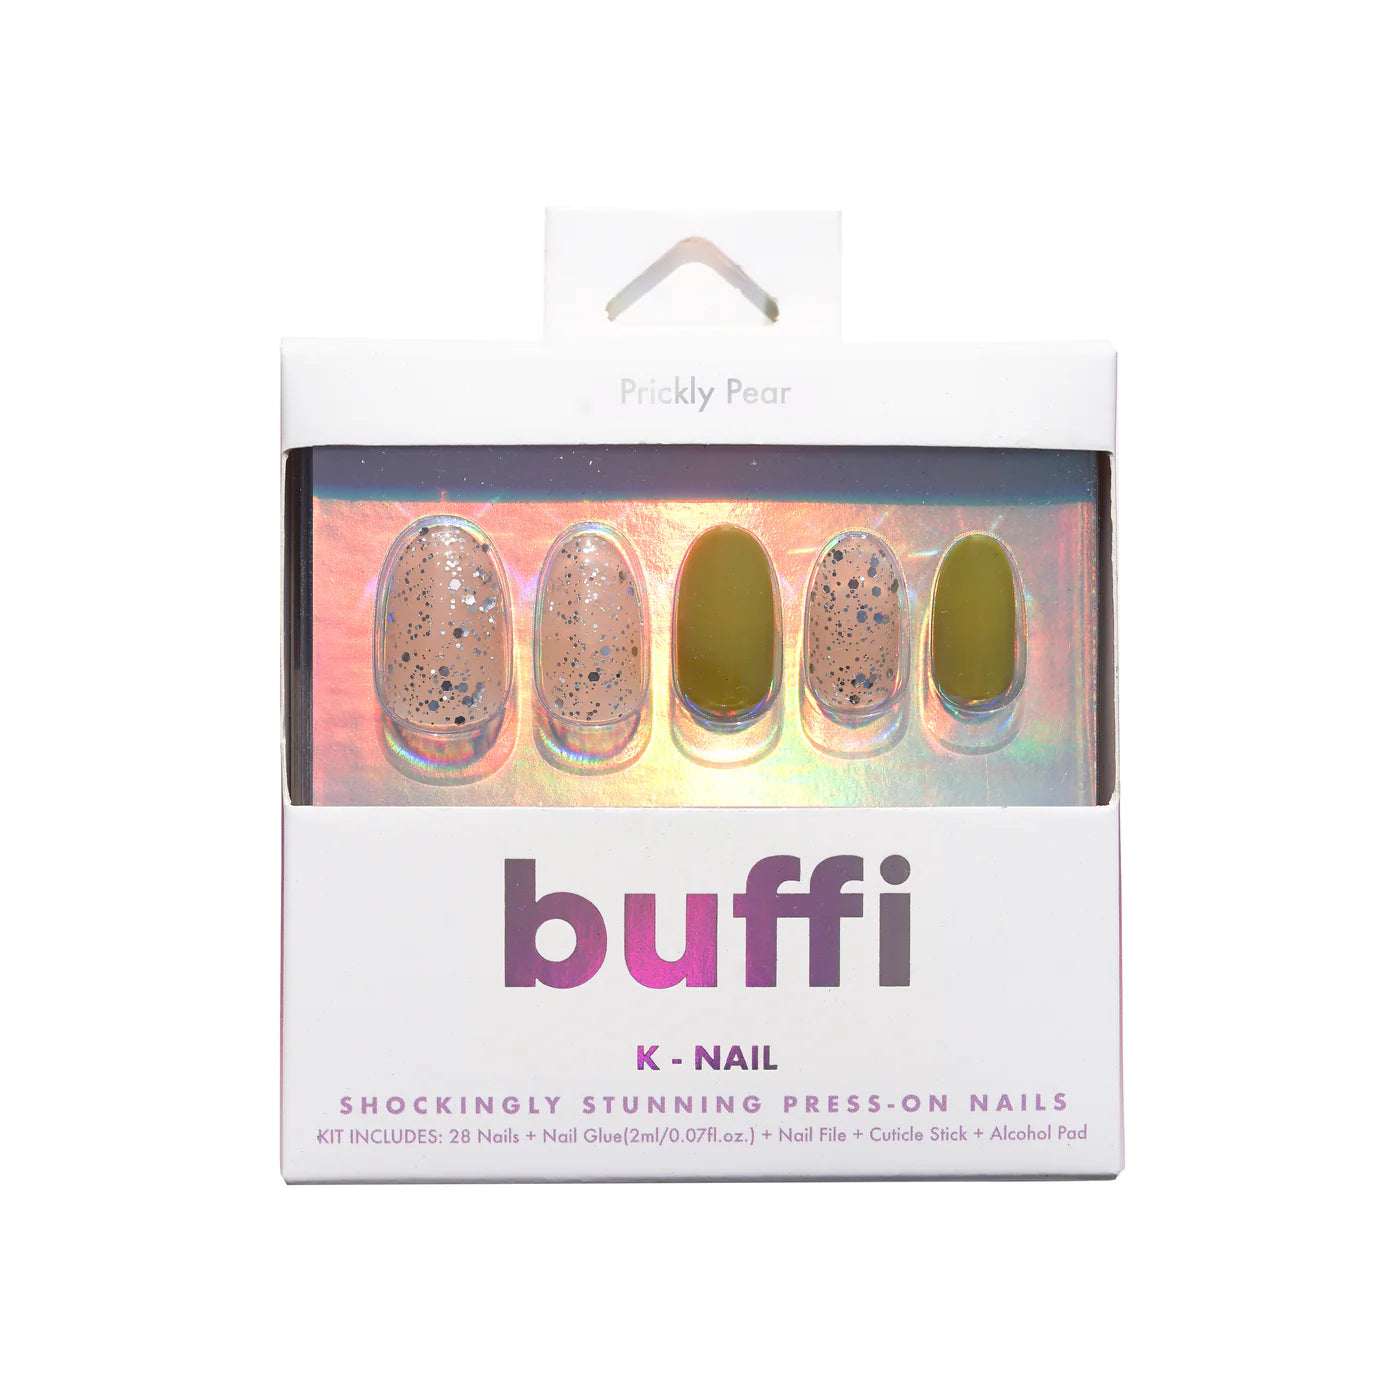 Kara Beauty - Buffi Press On Nails Prickly Pear